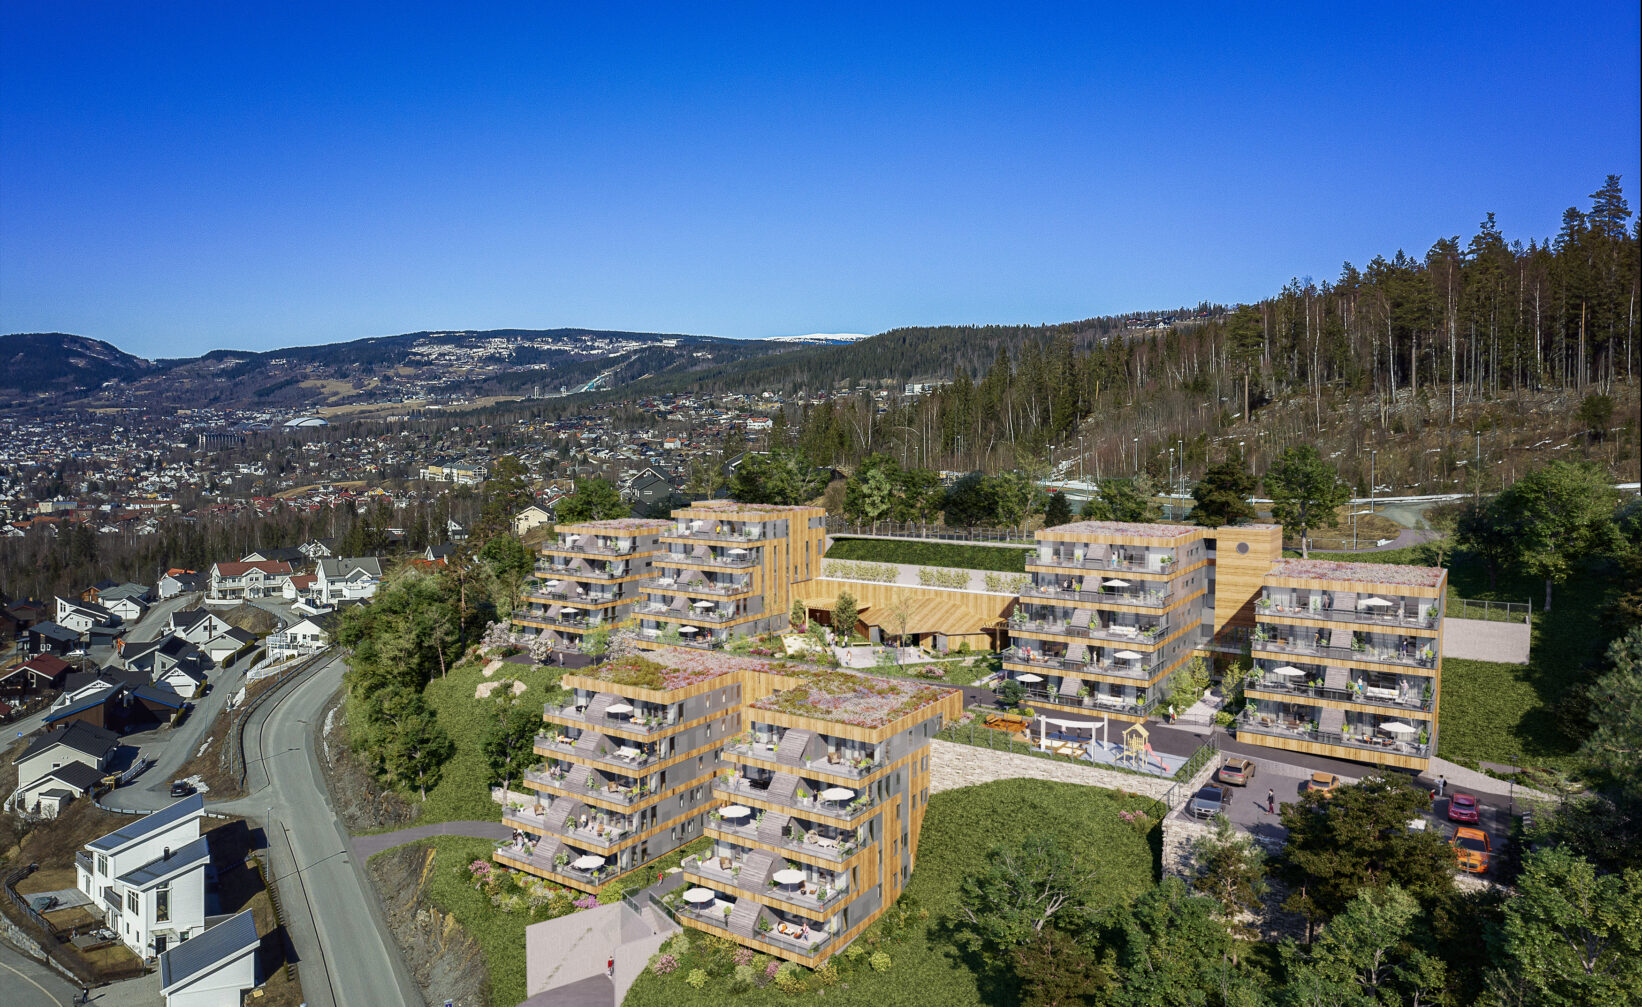 en luftfoto av et leilighetskompleks i fjellet.